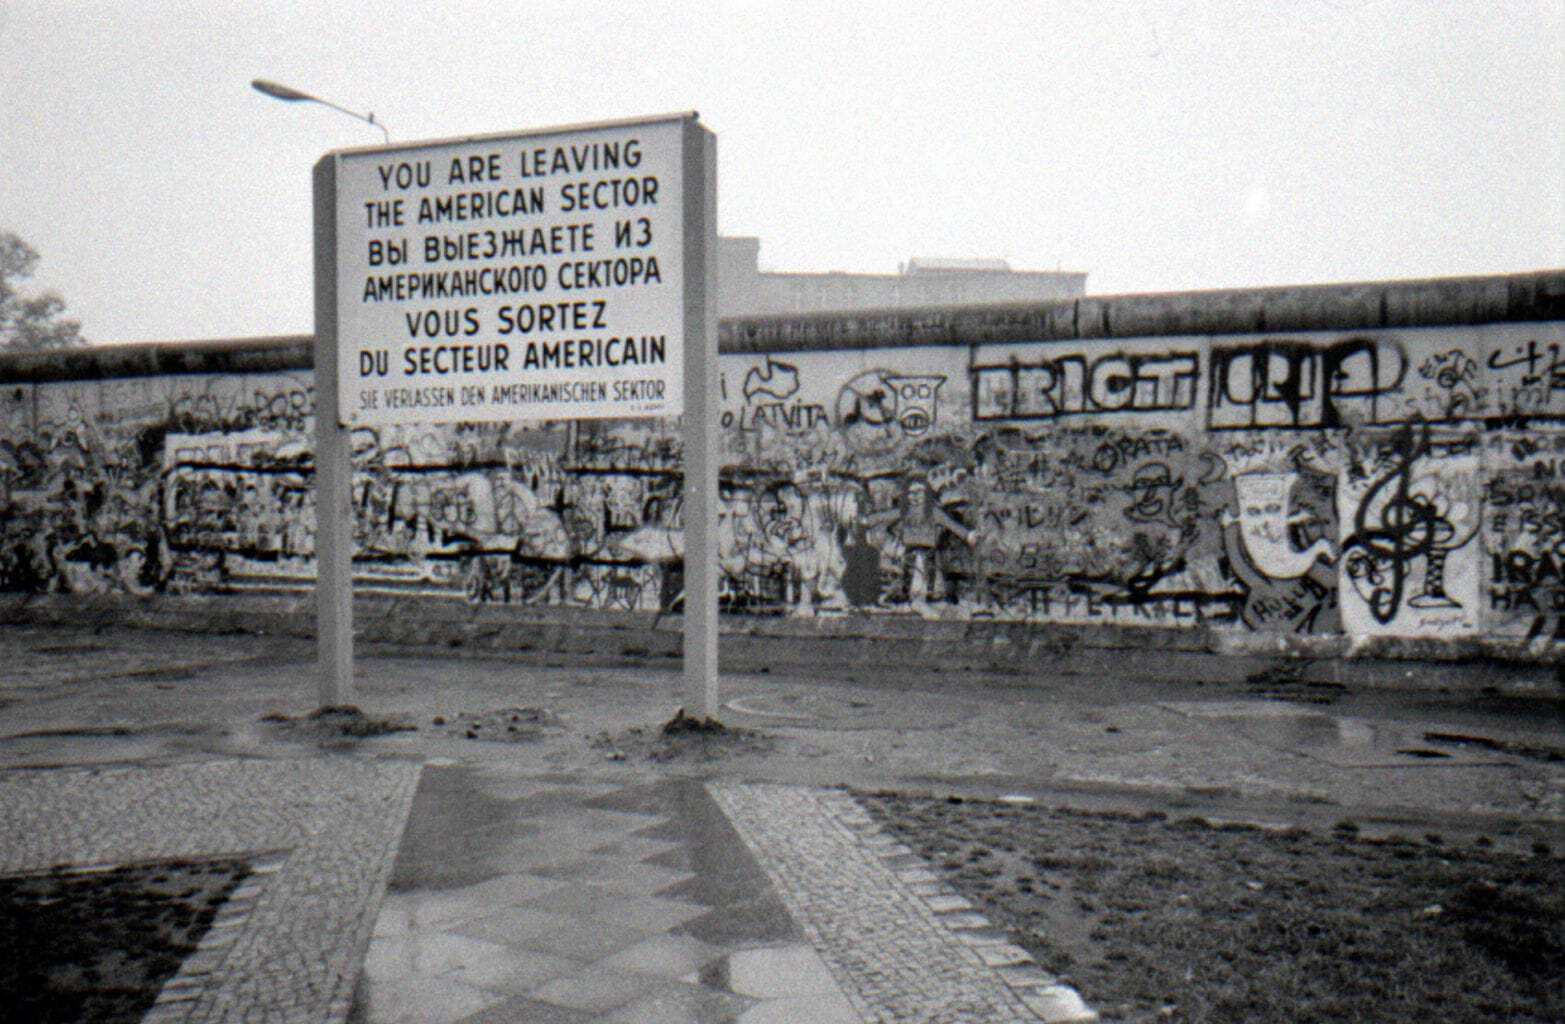 De Amerikaanse sector van Berlijn langszij de Berlijnse muur toen de stad nog gedeeld was